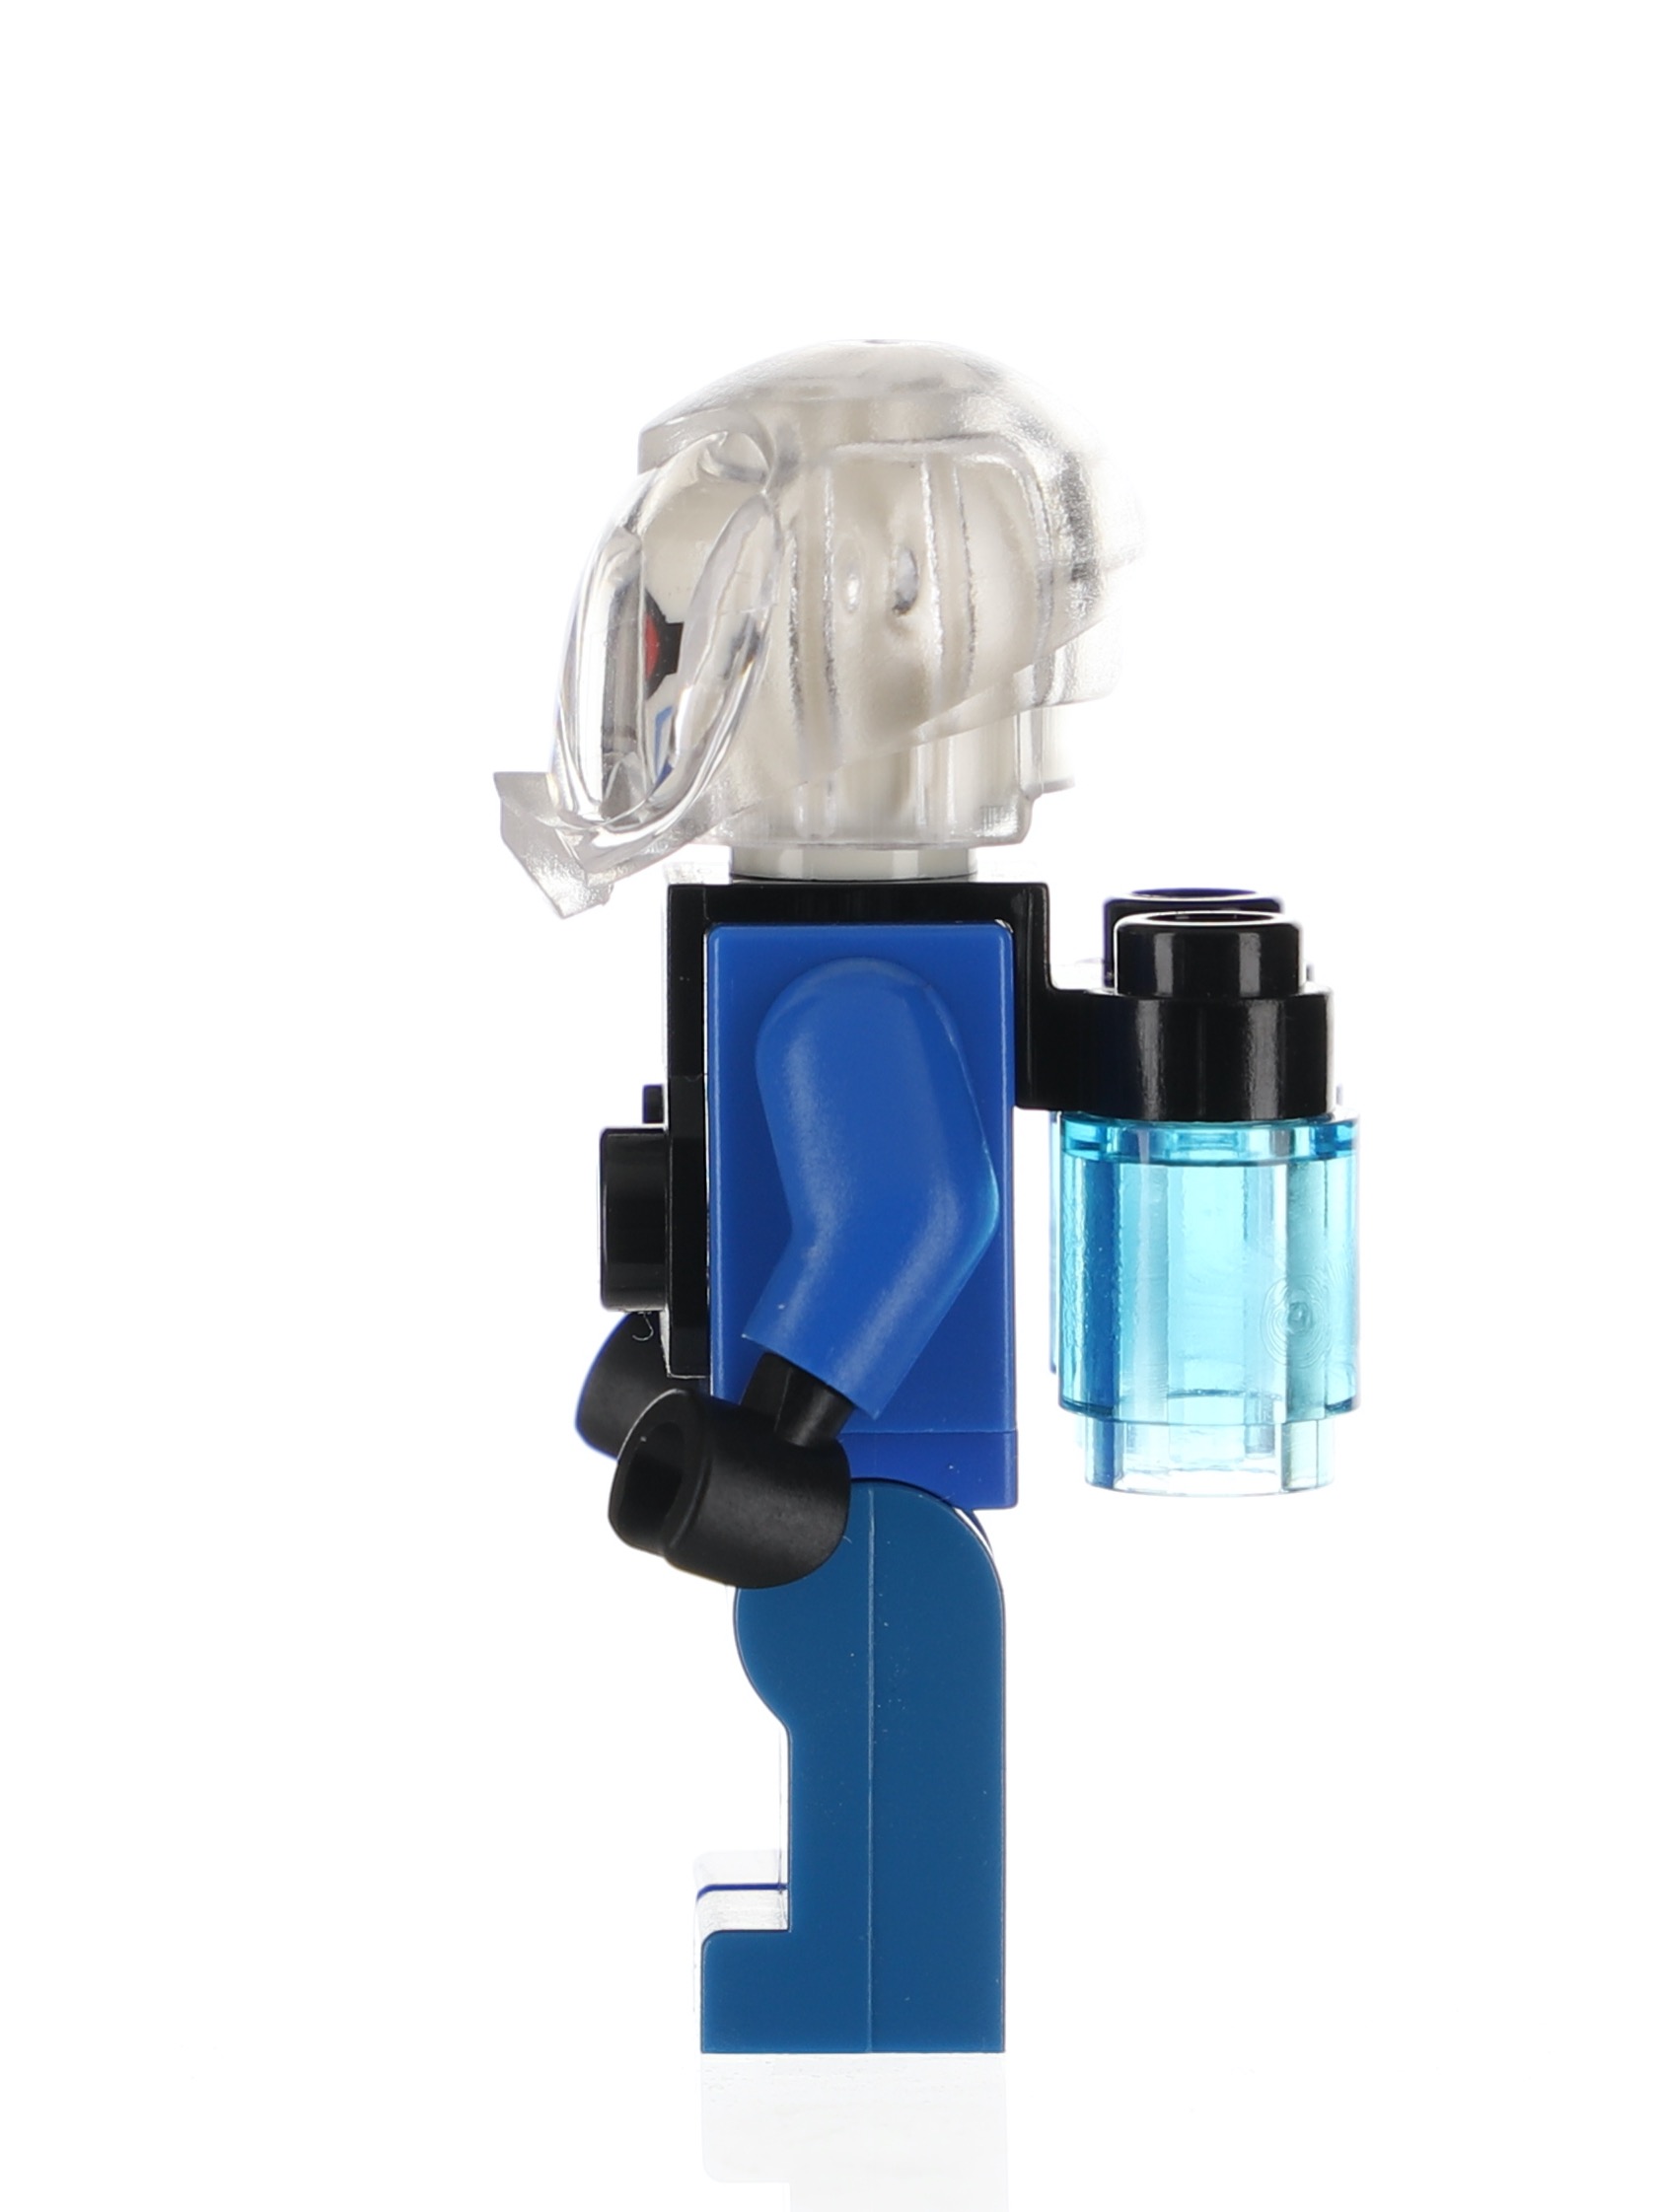 Lego Batman 7884 Mr Freeze Glace Panier Pour Minifigures Neuf